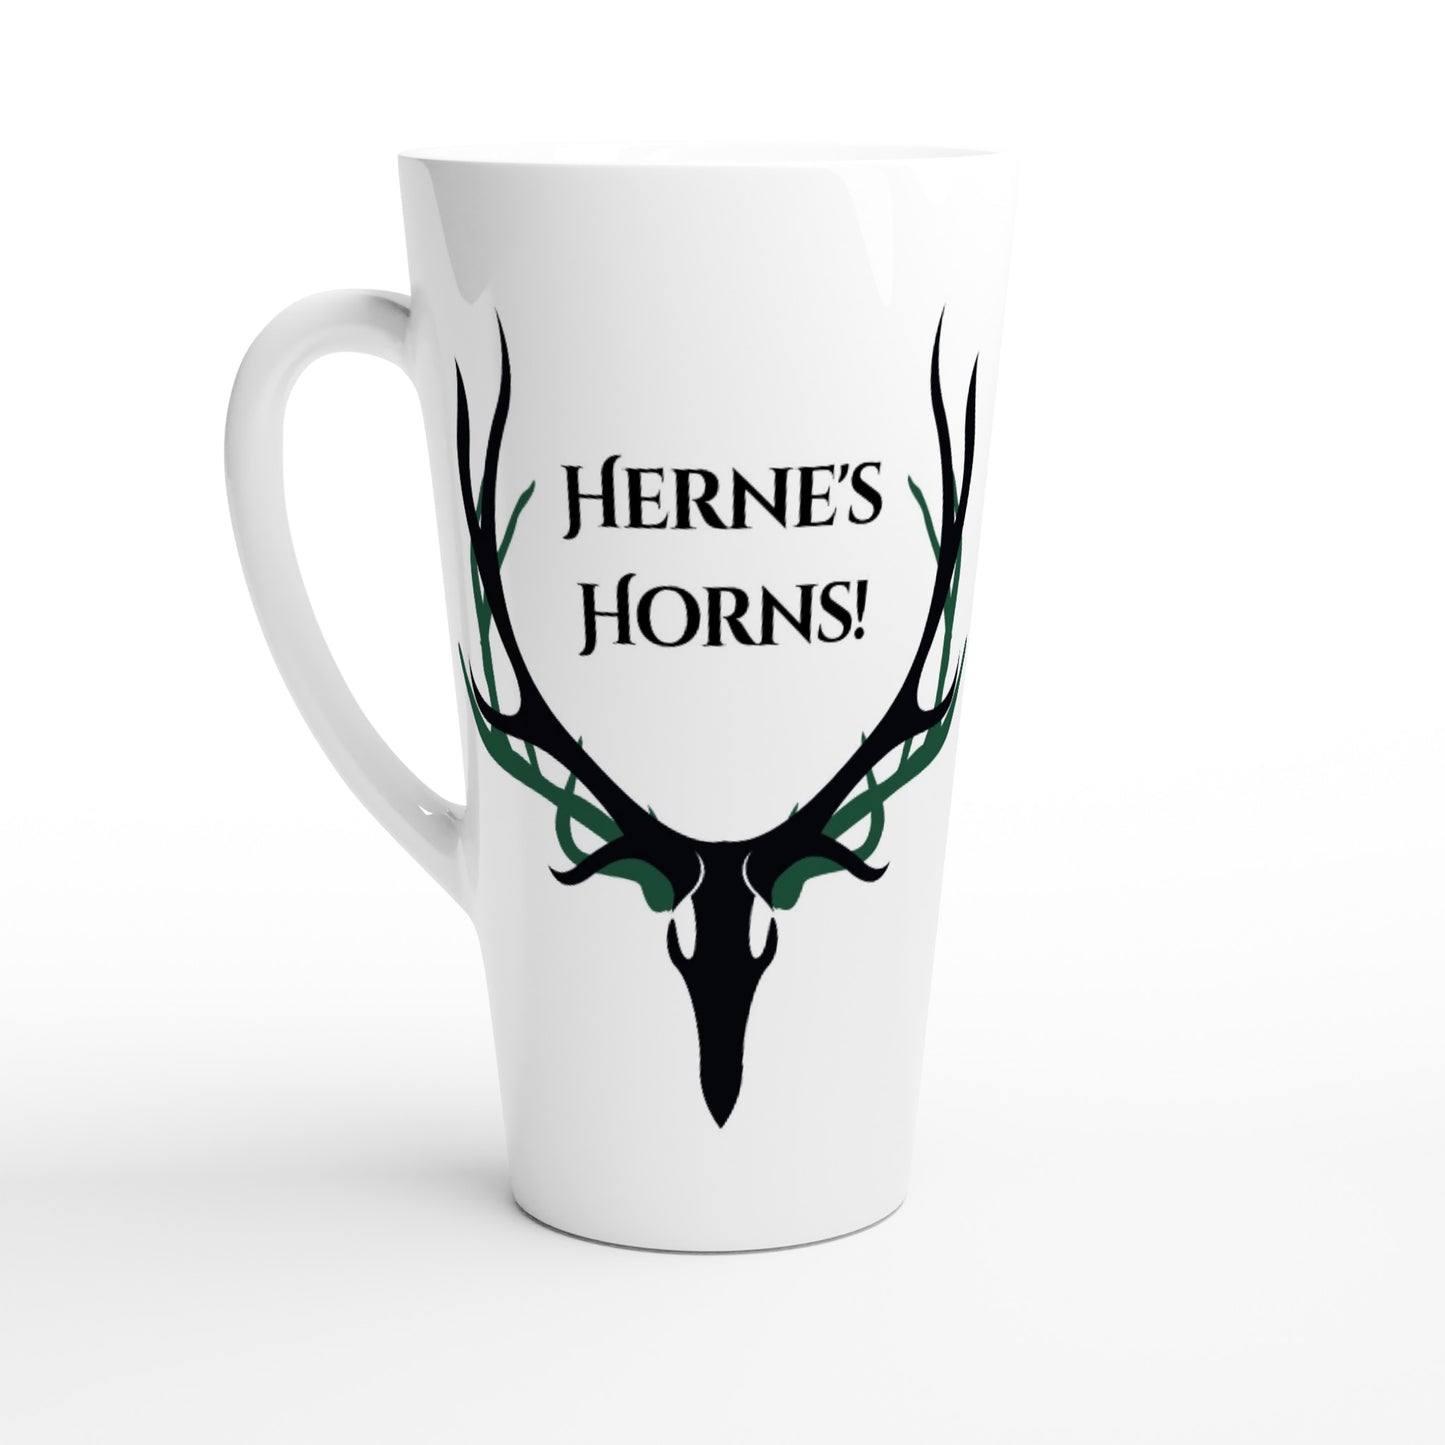 Herne's Hornes White Latte 17oz Ceramic Mug